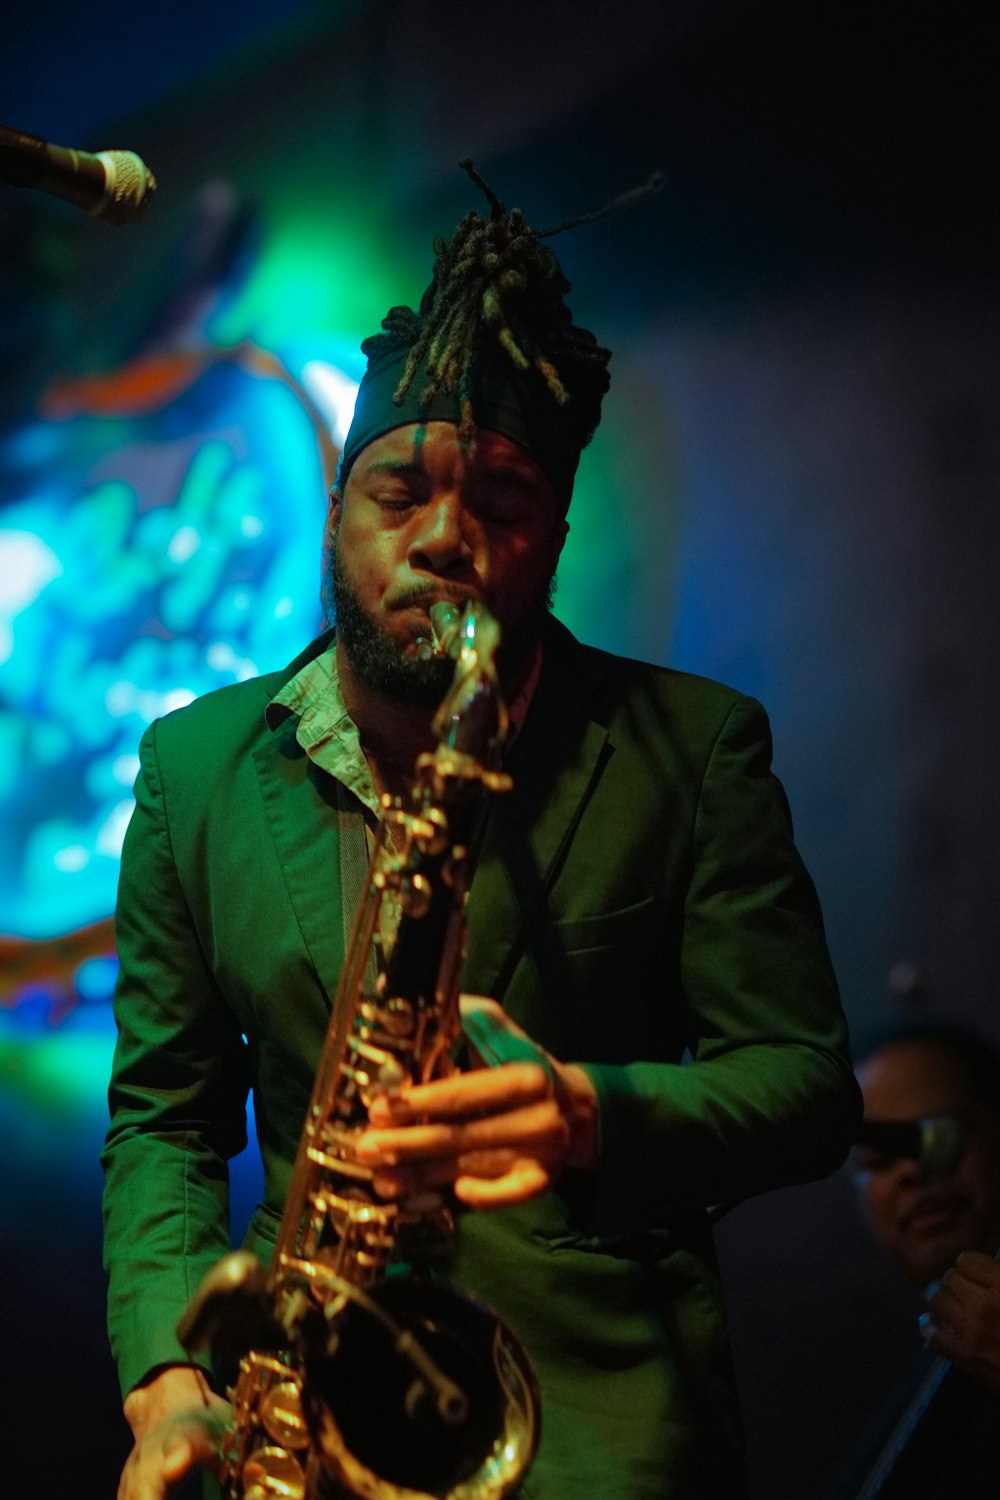 Un hombre con rastas tocando un saxofón